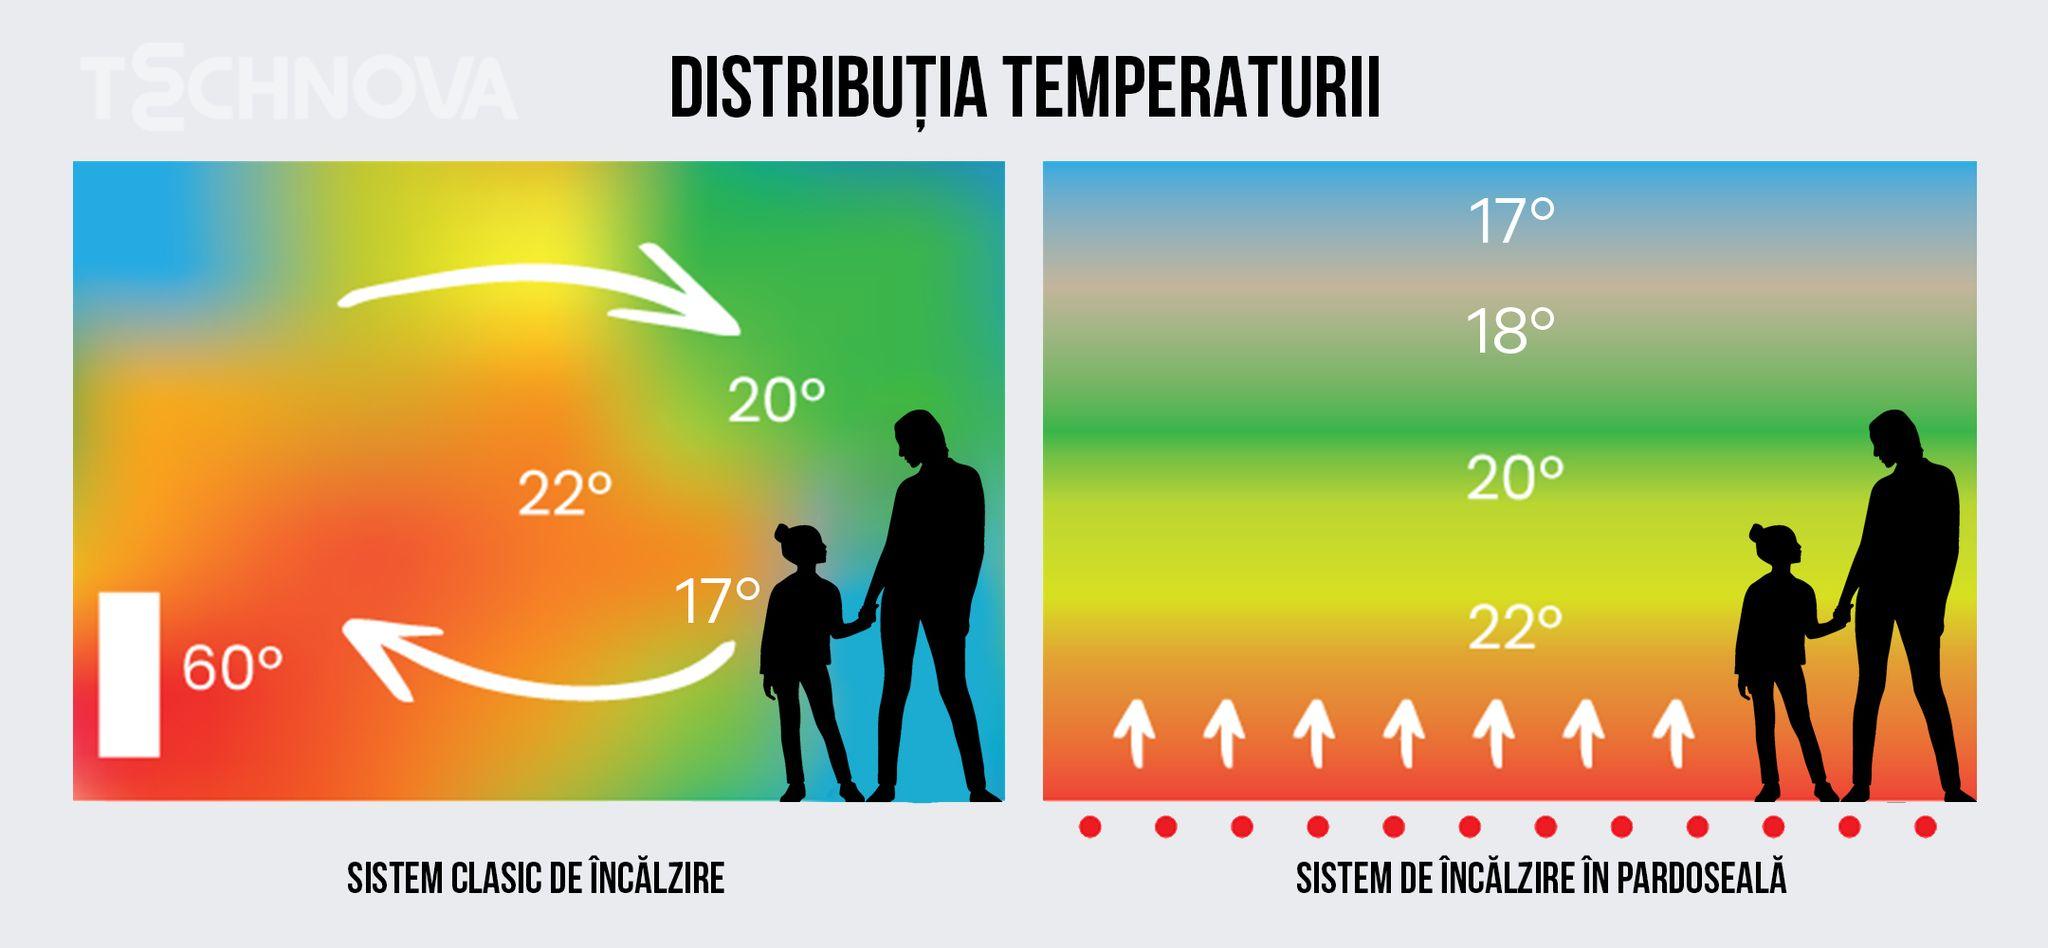 distributia temperaturii.jpg